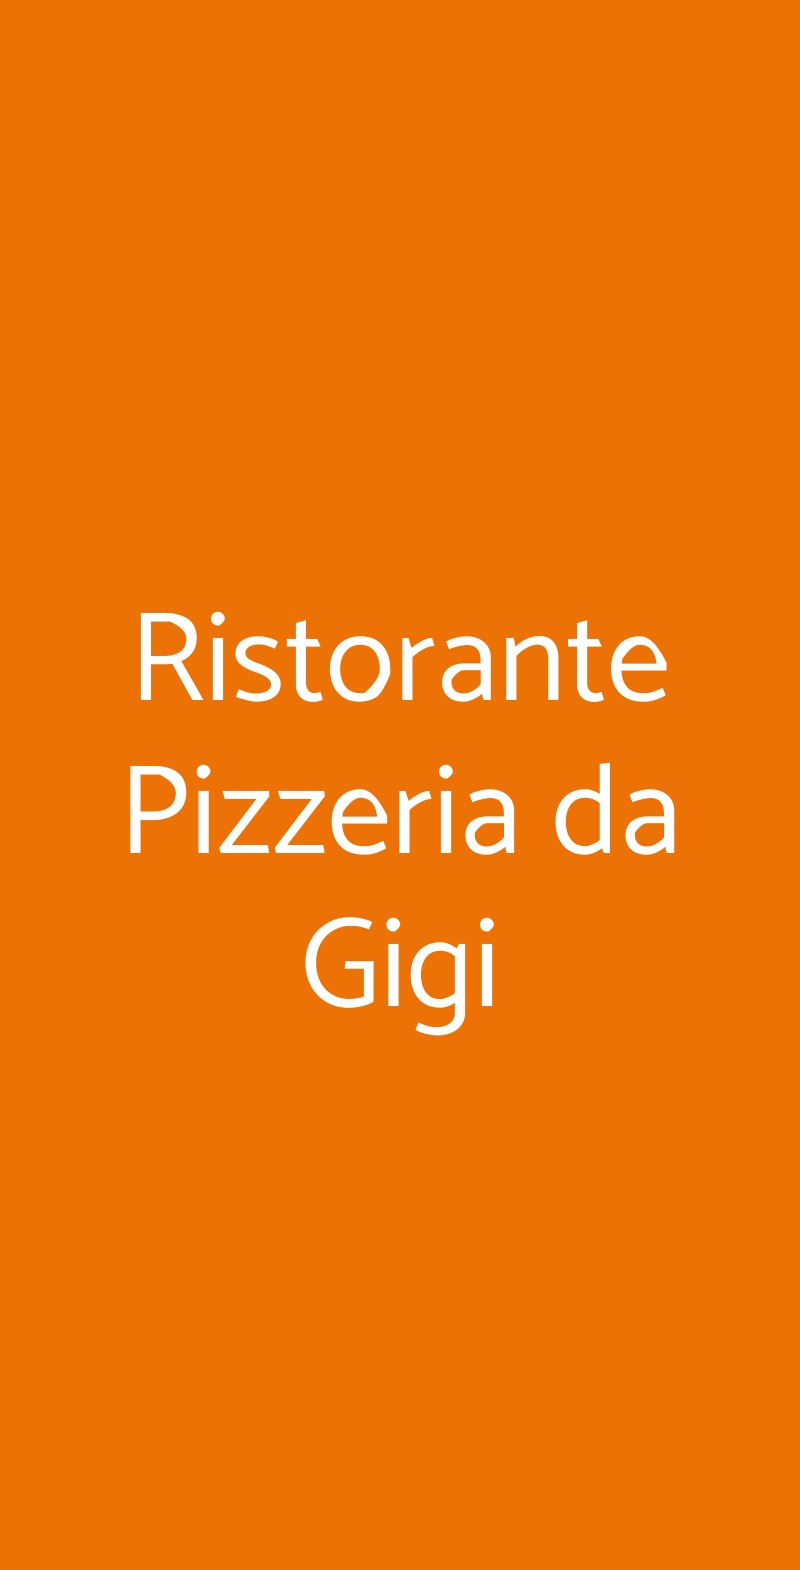 Ristorante Pizzeria da Gigi Bologna menù 1 pagina